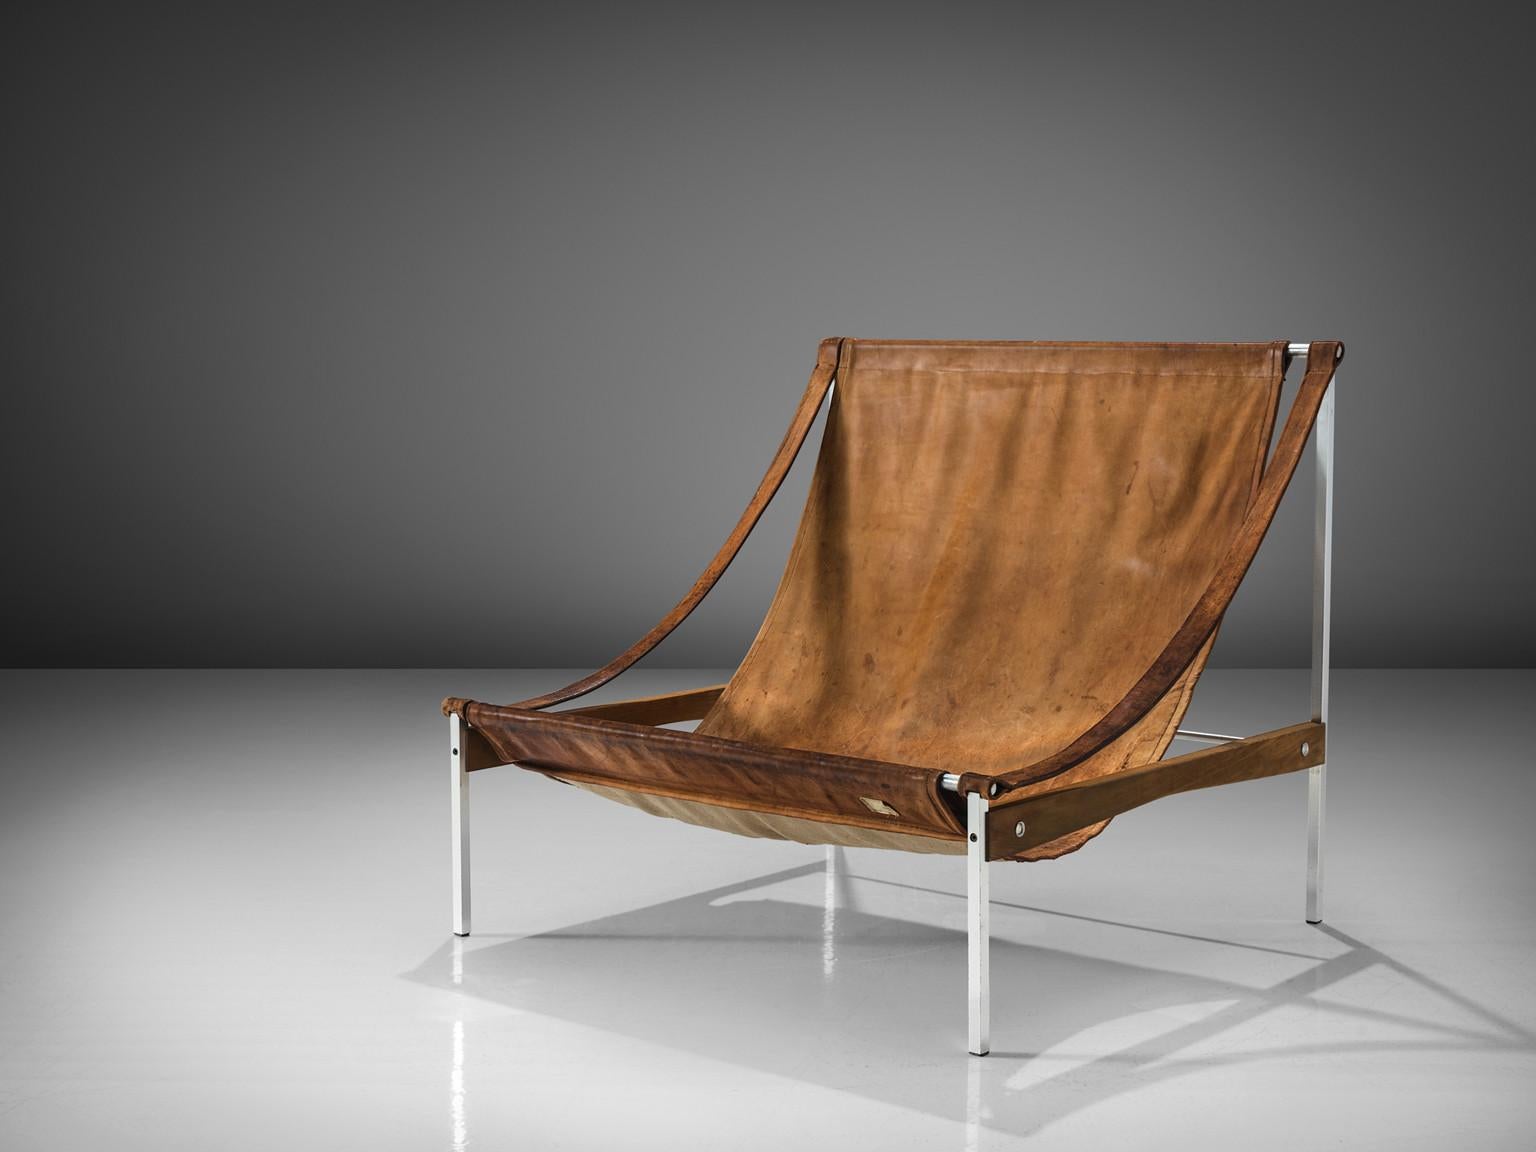 Stig Poulsson, chaise longue, modèle 'Bequem', cuir, aluminium, frêne, Danemark, design 1968-1969

Cette chaise longue 